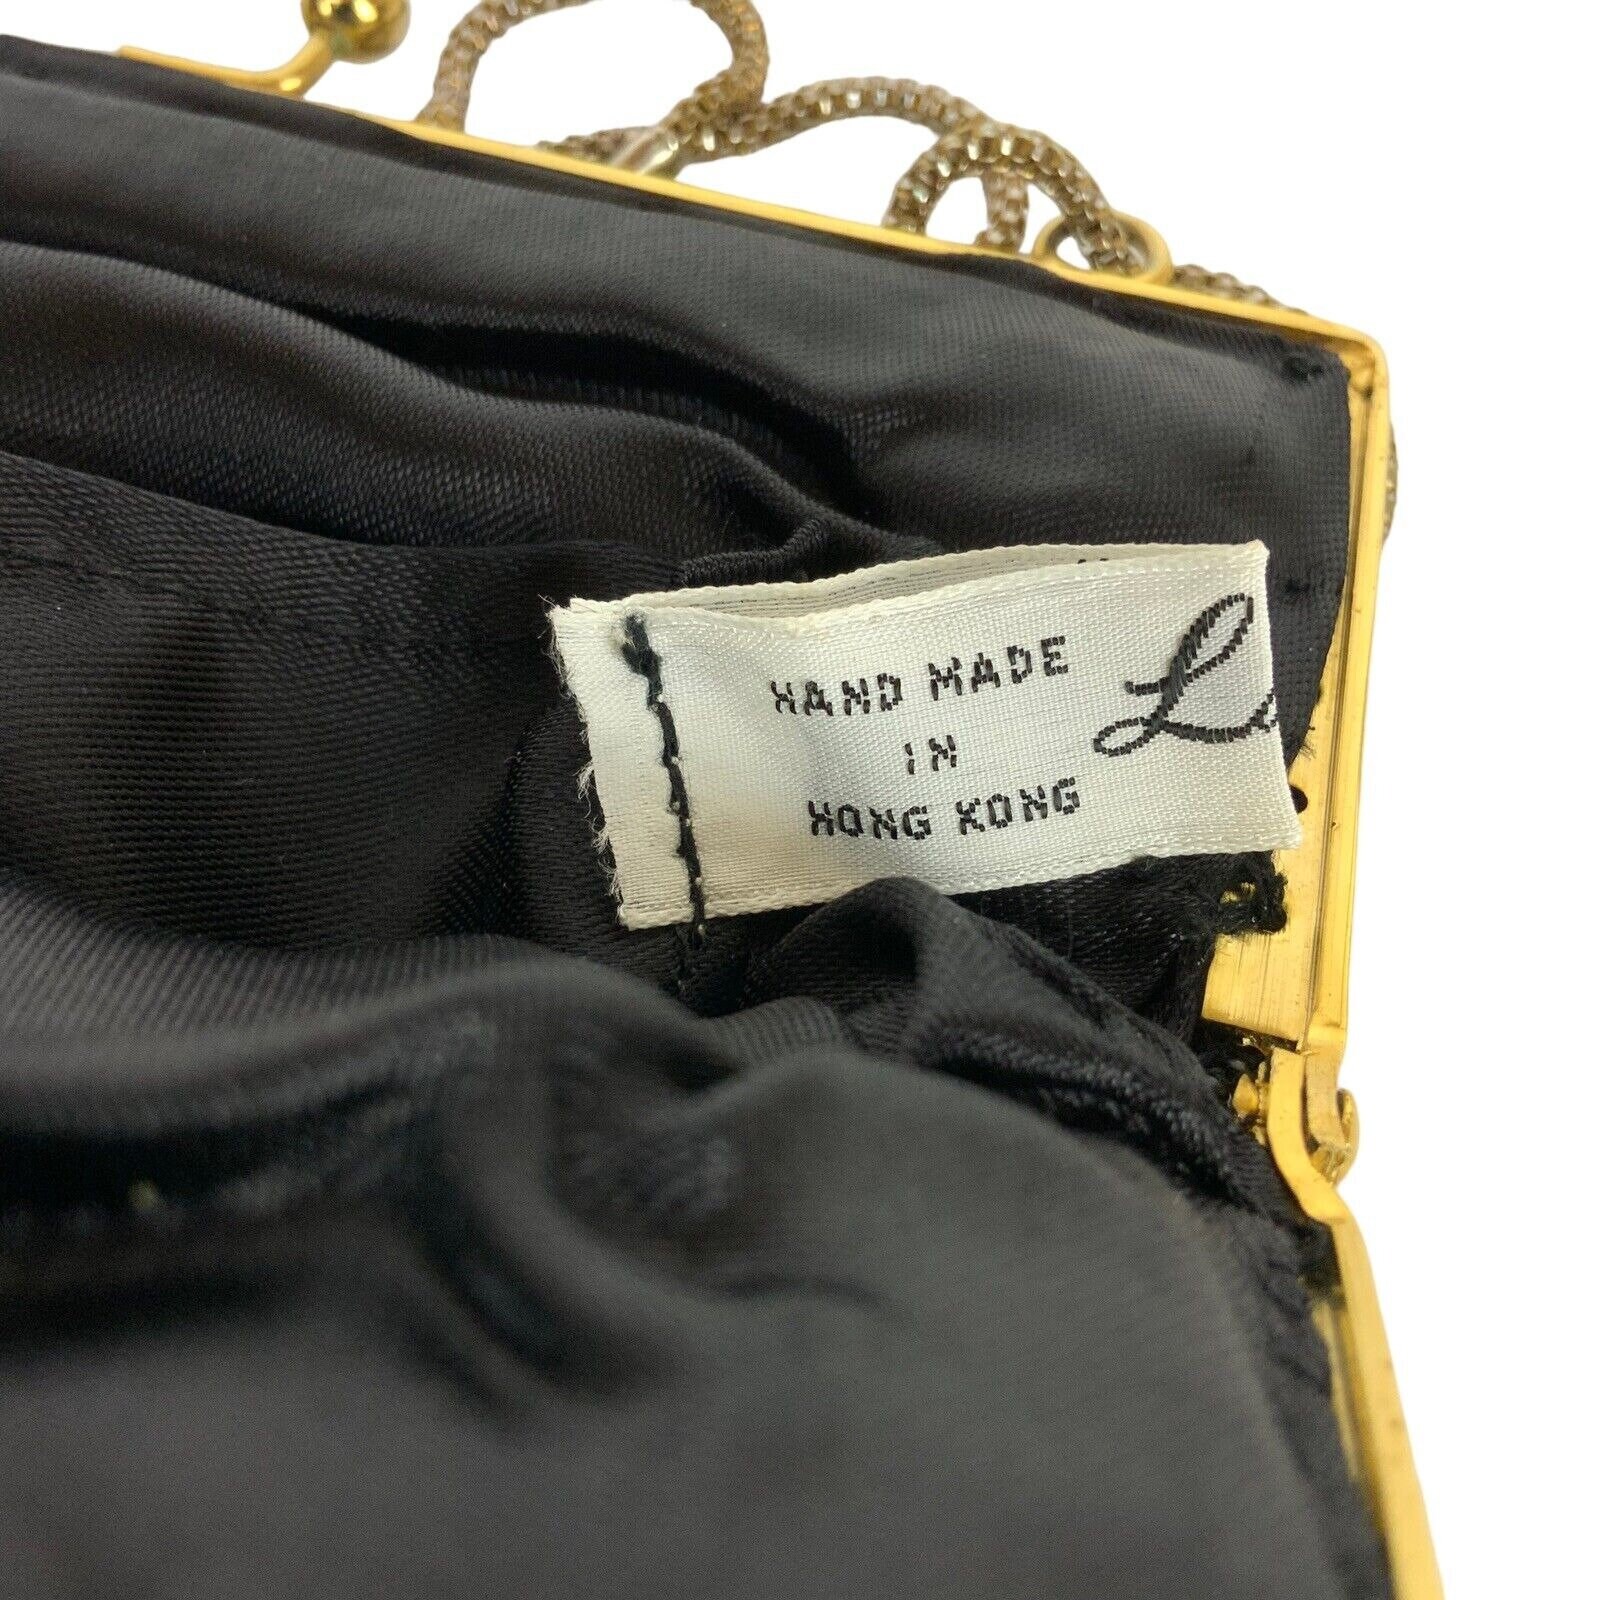 La Regale Vintage Black Beaded Purse Gold Chain Shoulder Strap